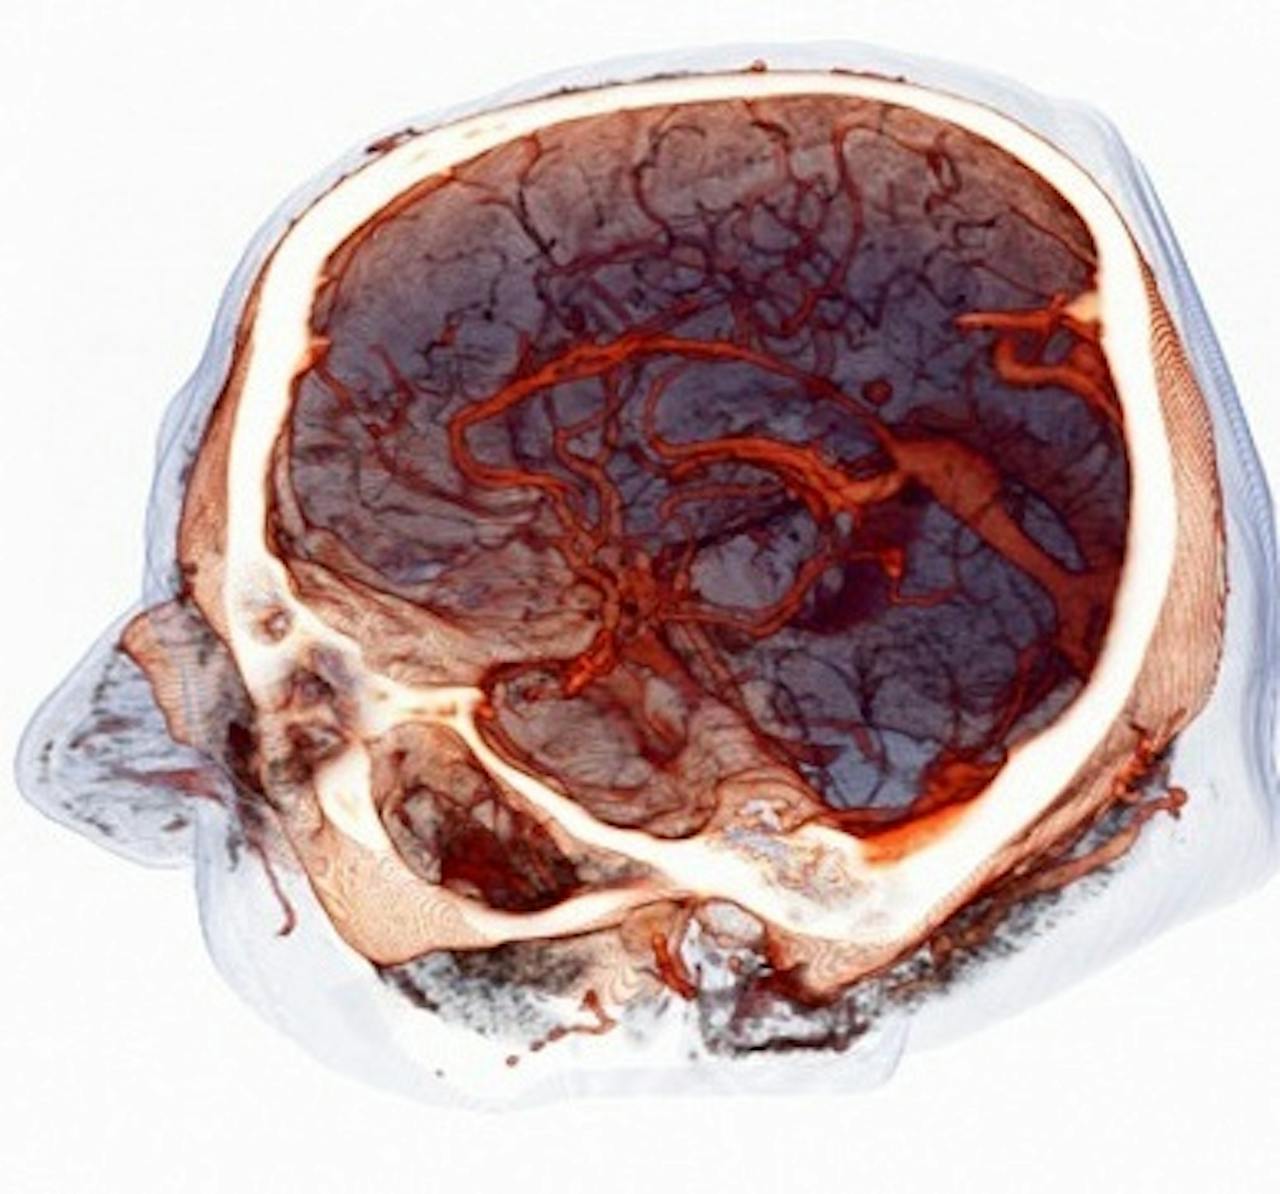 Een afbeelding waar de bloedvaten van het brein op te zien zijn.